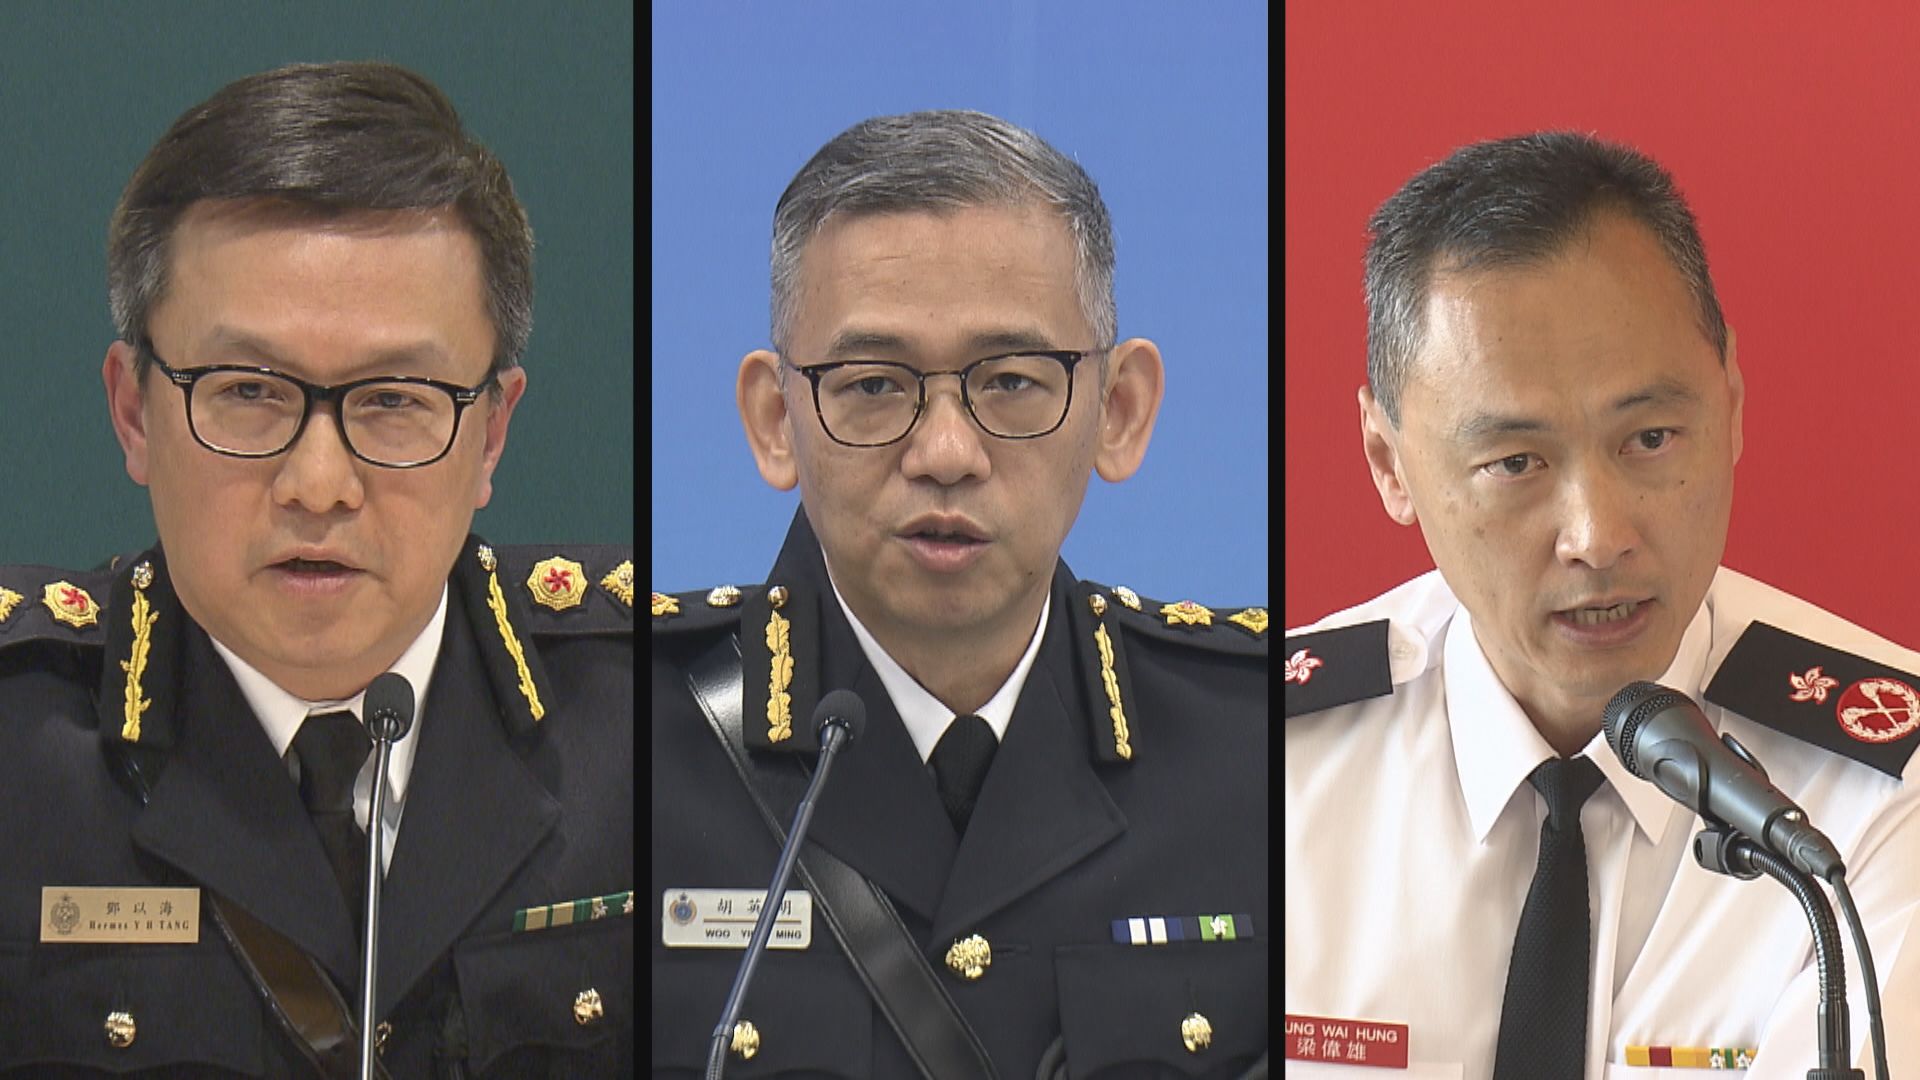 五個紀律部隊首長譴責英雄化襲警行為